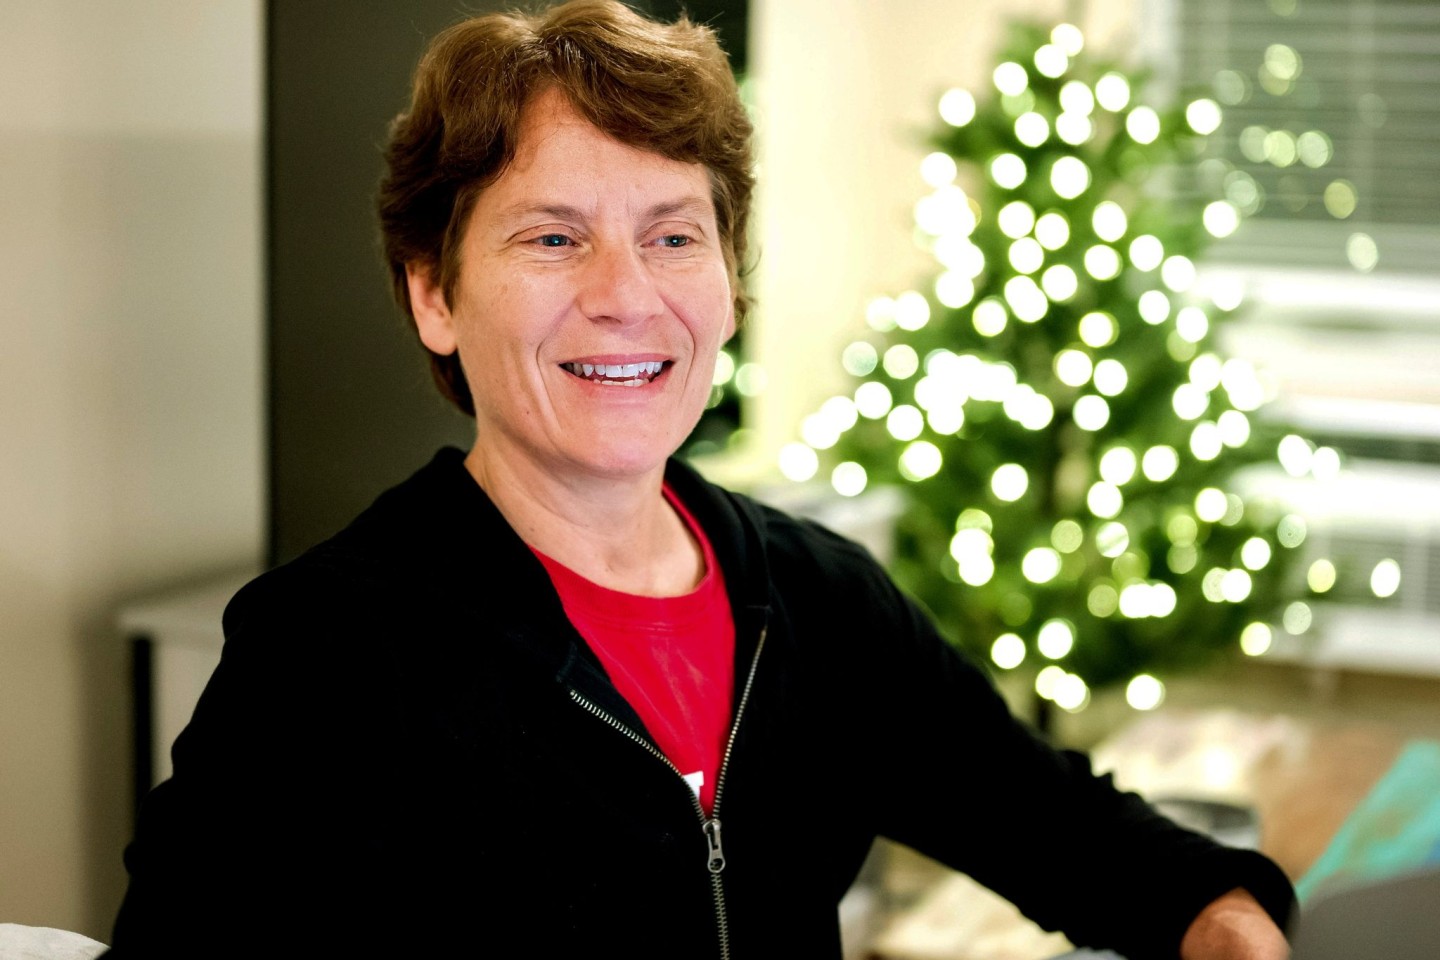 Die Stanford-Professorin Carolyn Bertozzi hat den Nobelpreis für Chemie gemeinsam zwei weiteren Forschern erhalten.